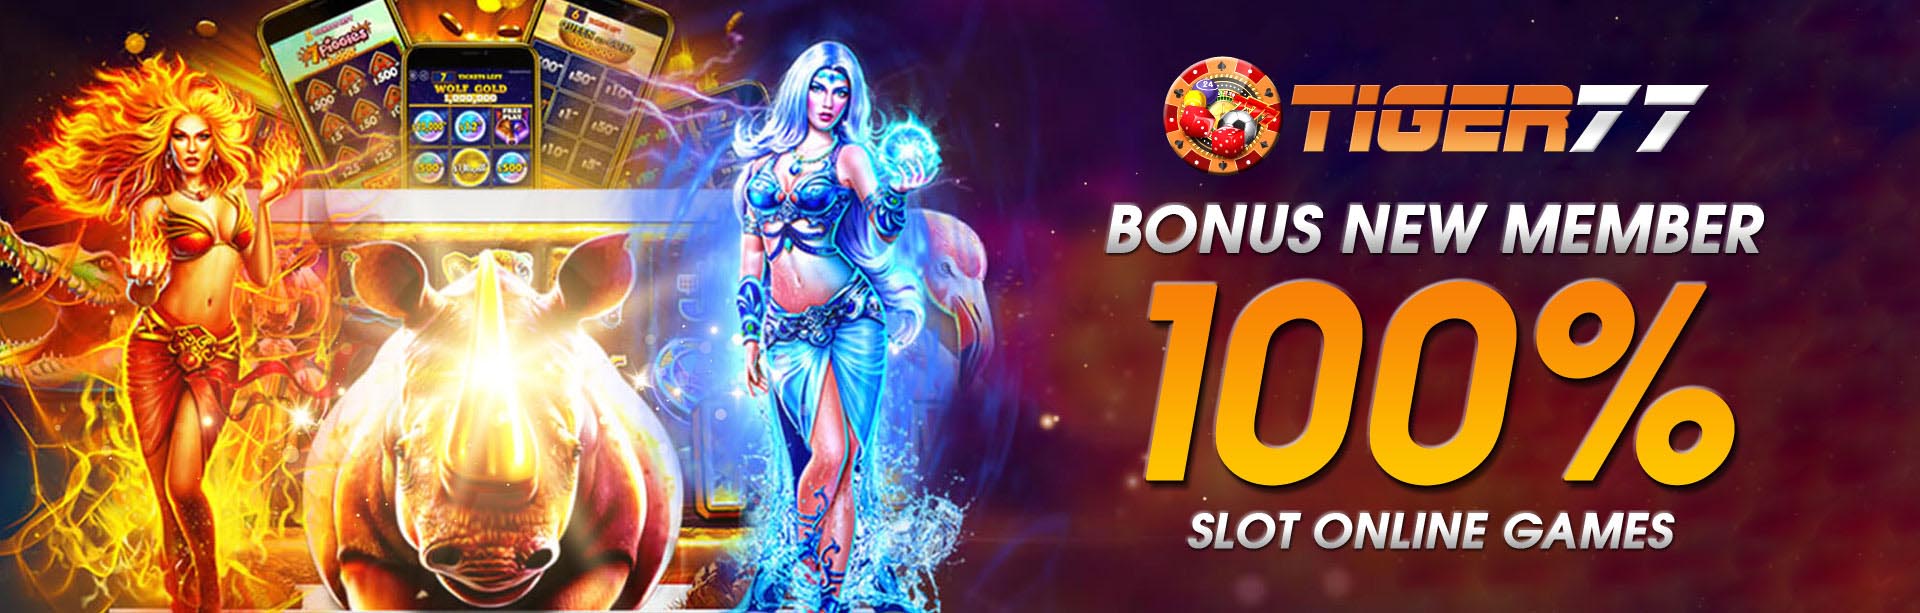 Daftar Situs Judi Slot Online Bonus New Member 100% Deposit Pulsa